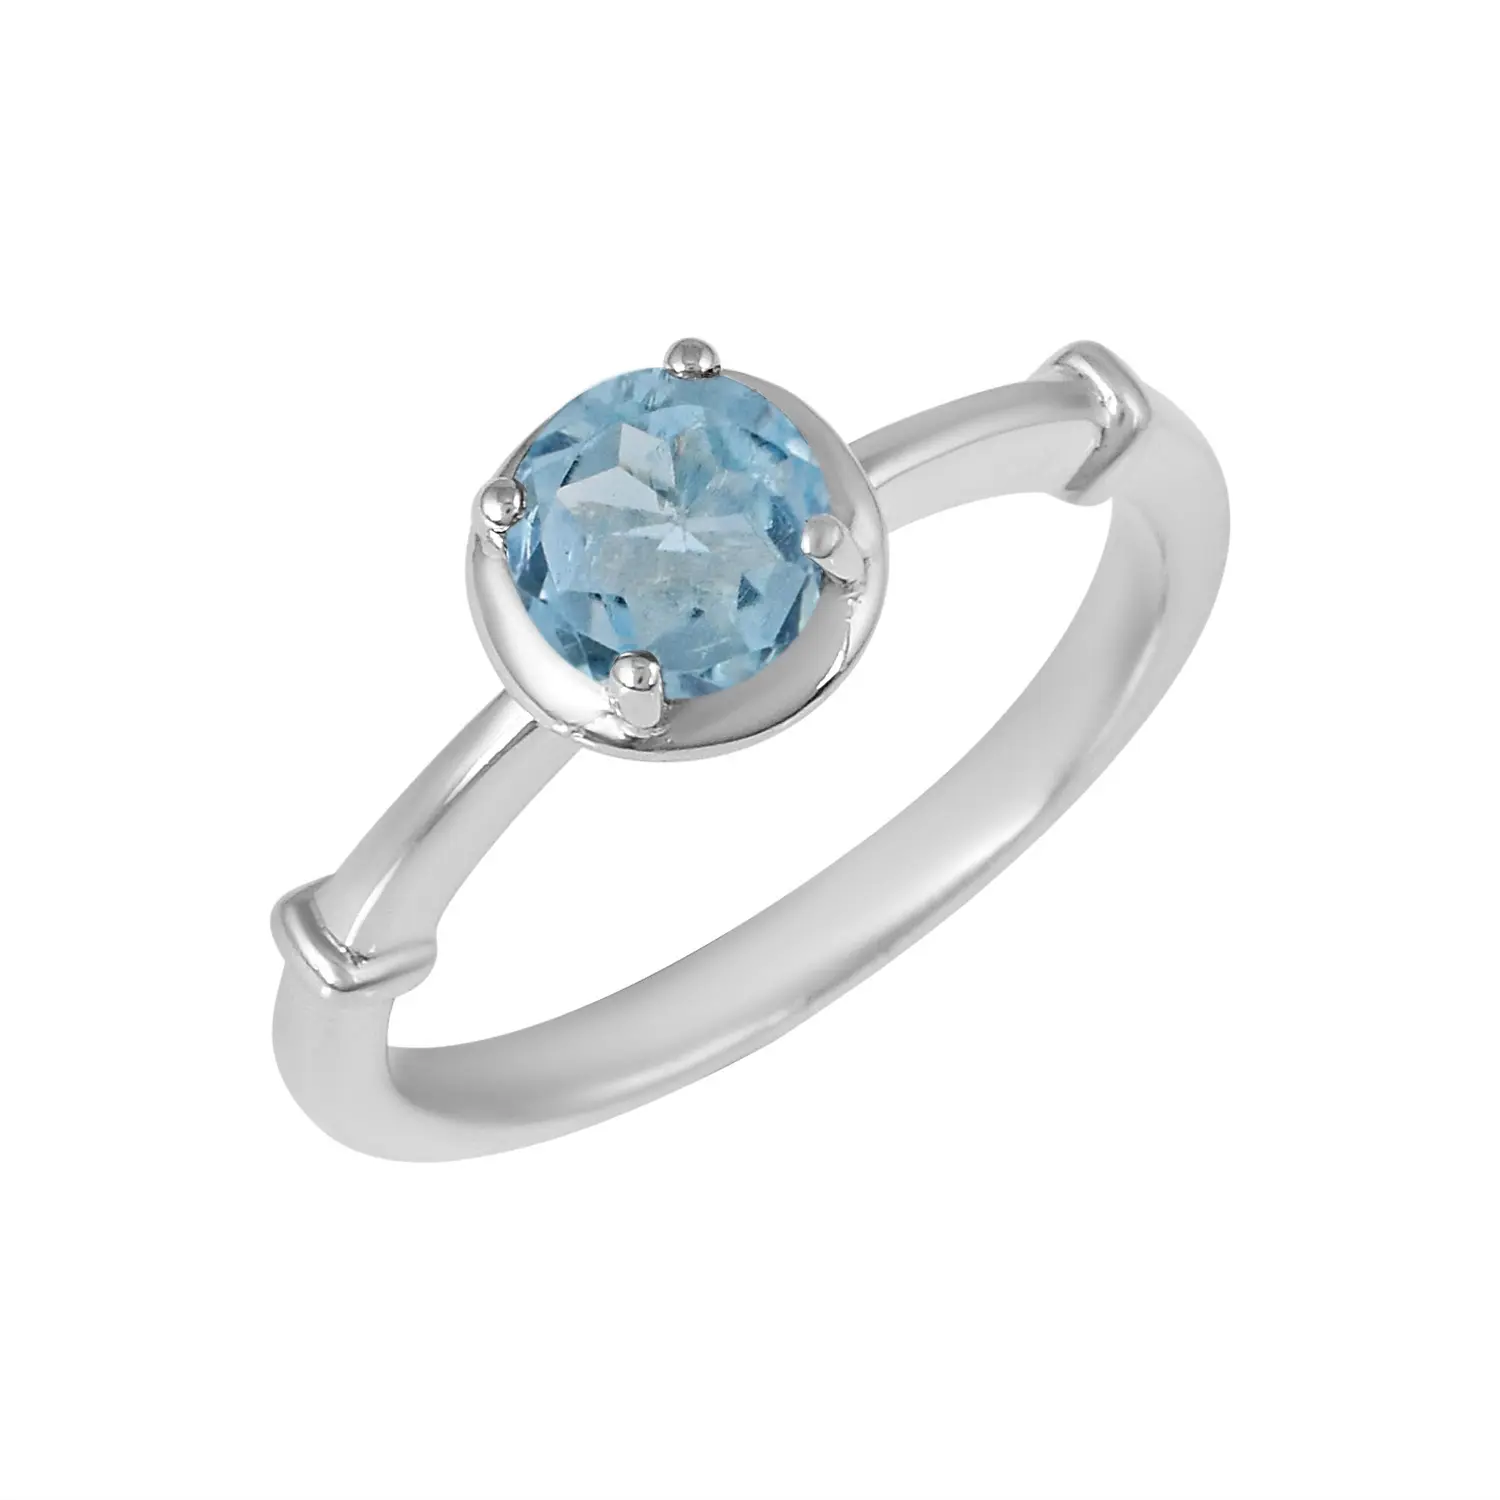 สีฟ้าบุษราคัมพลอย925เงินสเตอร์ลิงแหวน Solitaire สำหรับผู้หญิงแต่งงานวันเกิดเครื่องประดับของขวัญสำหรับผู้หญิง